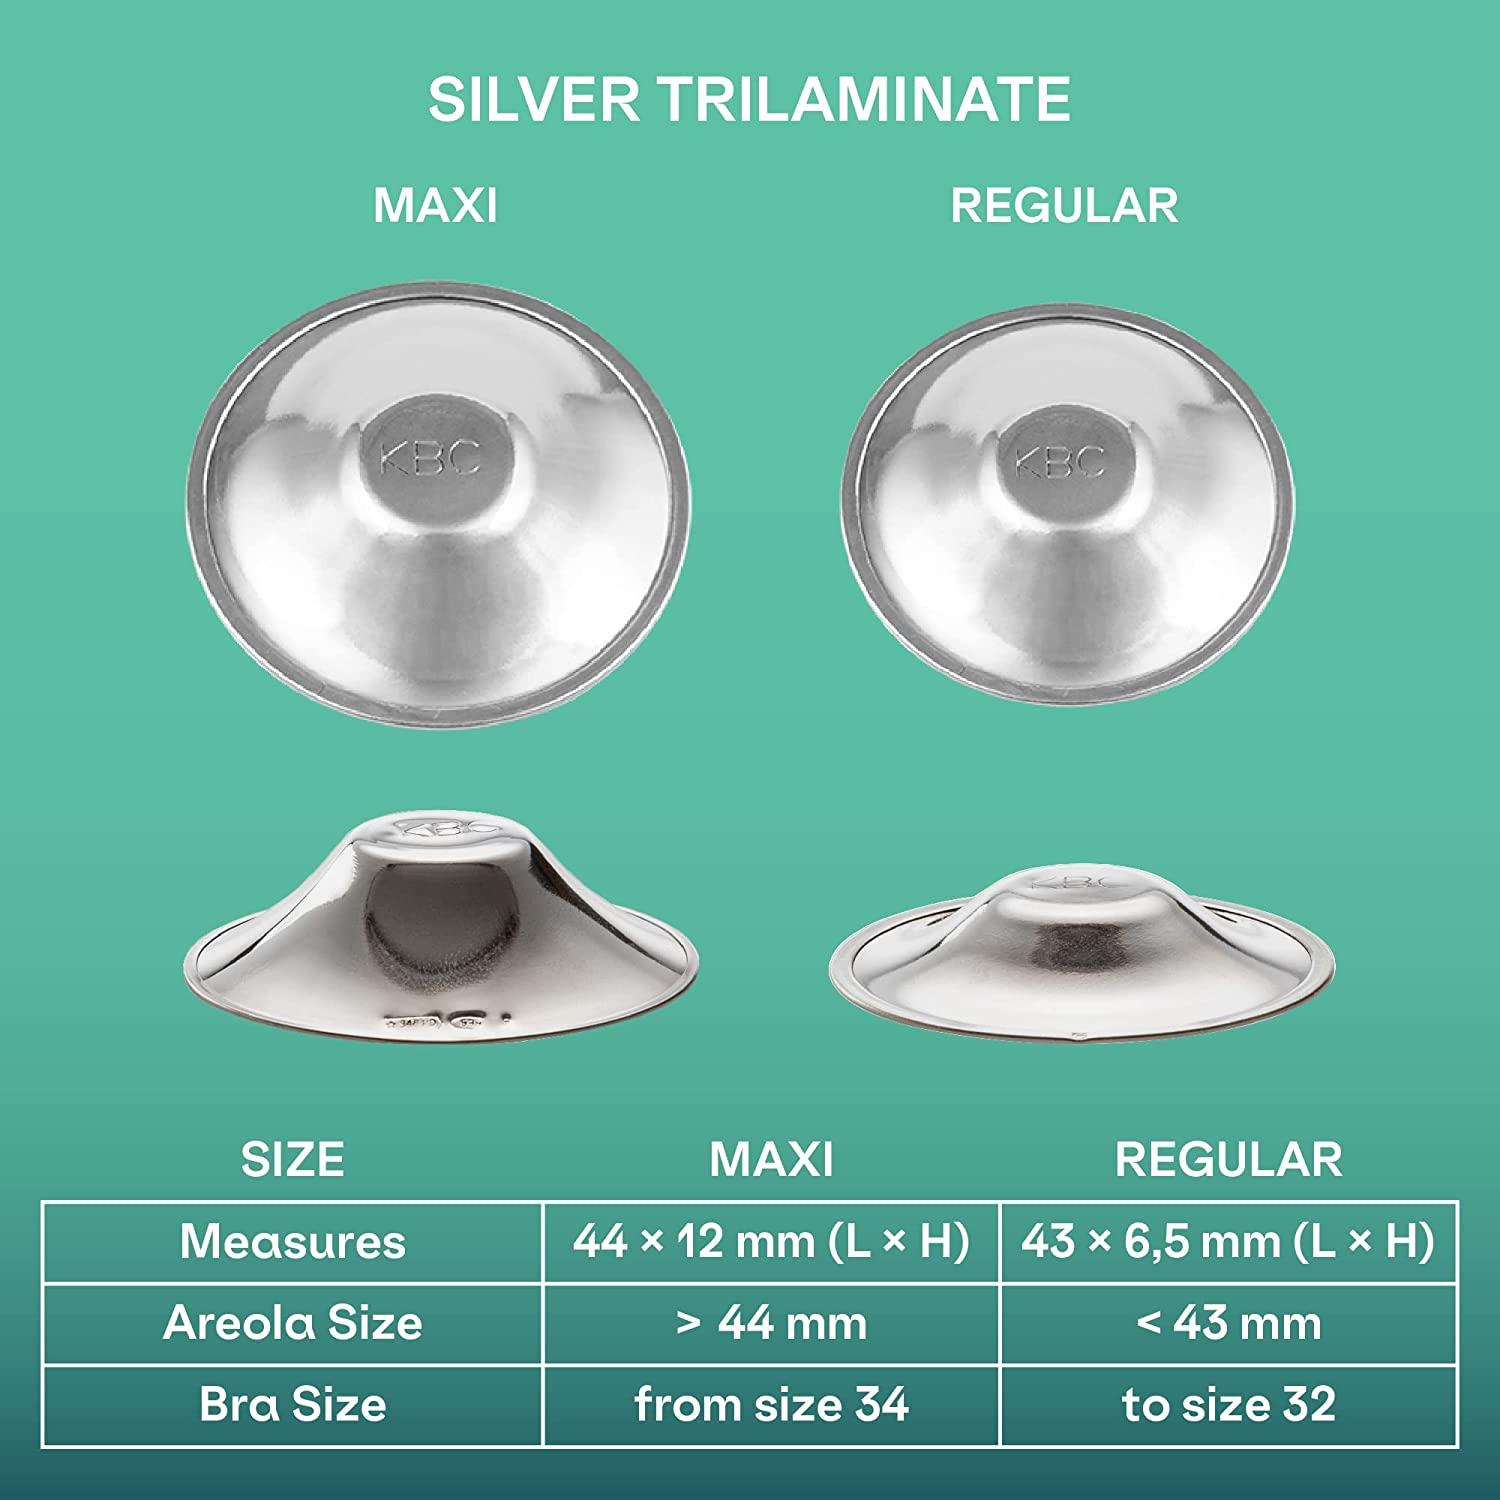 Koala Silver Cups  Silver nipple shields – Koala Babycare